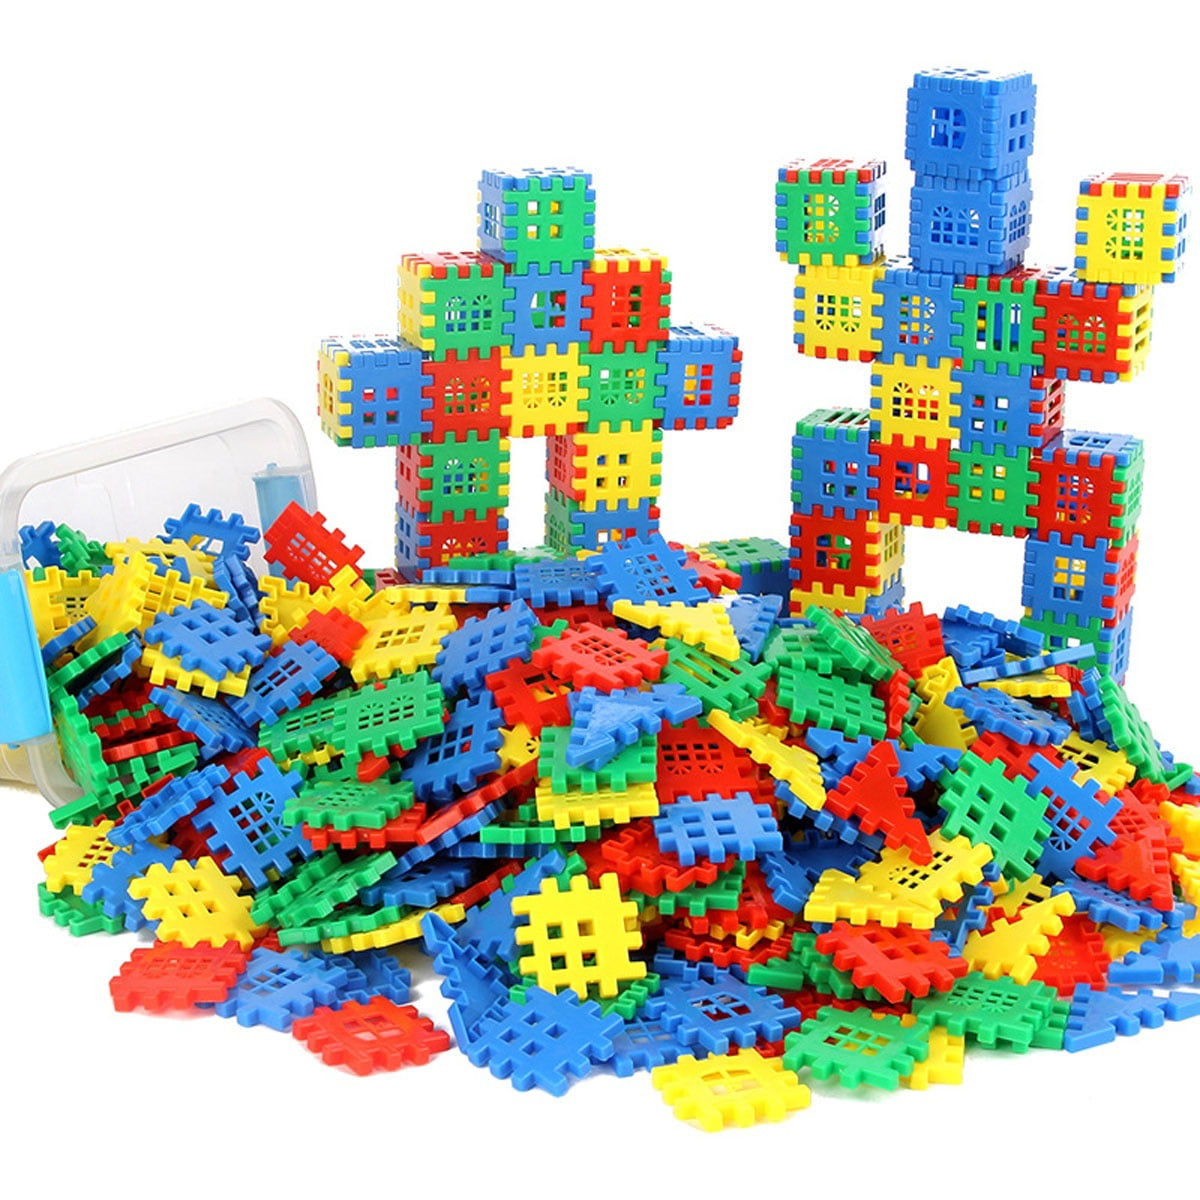 1 Pcs Building Blocks Toys Square Color Random Educational Kid's Toys 